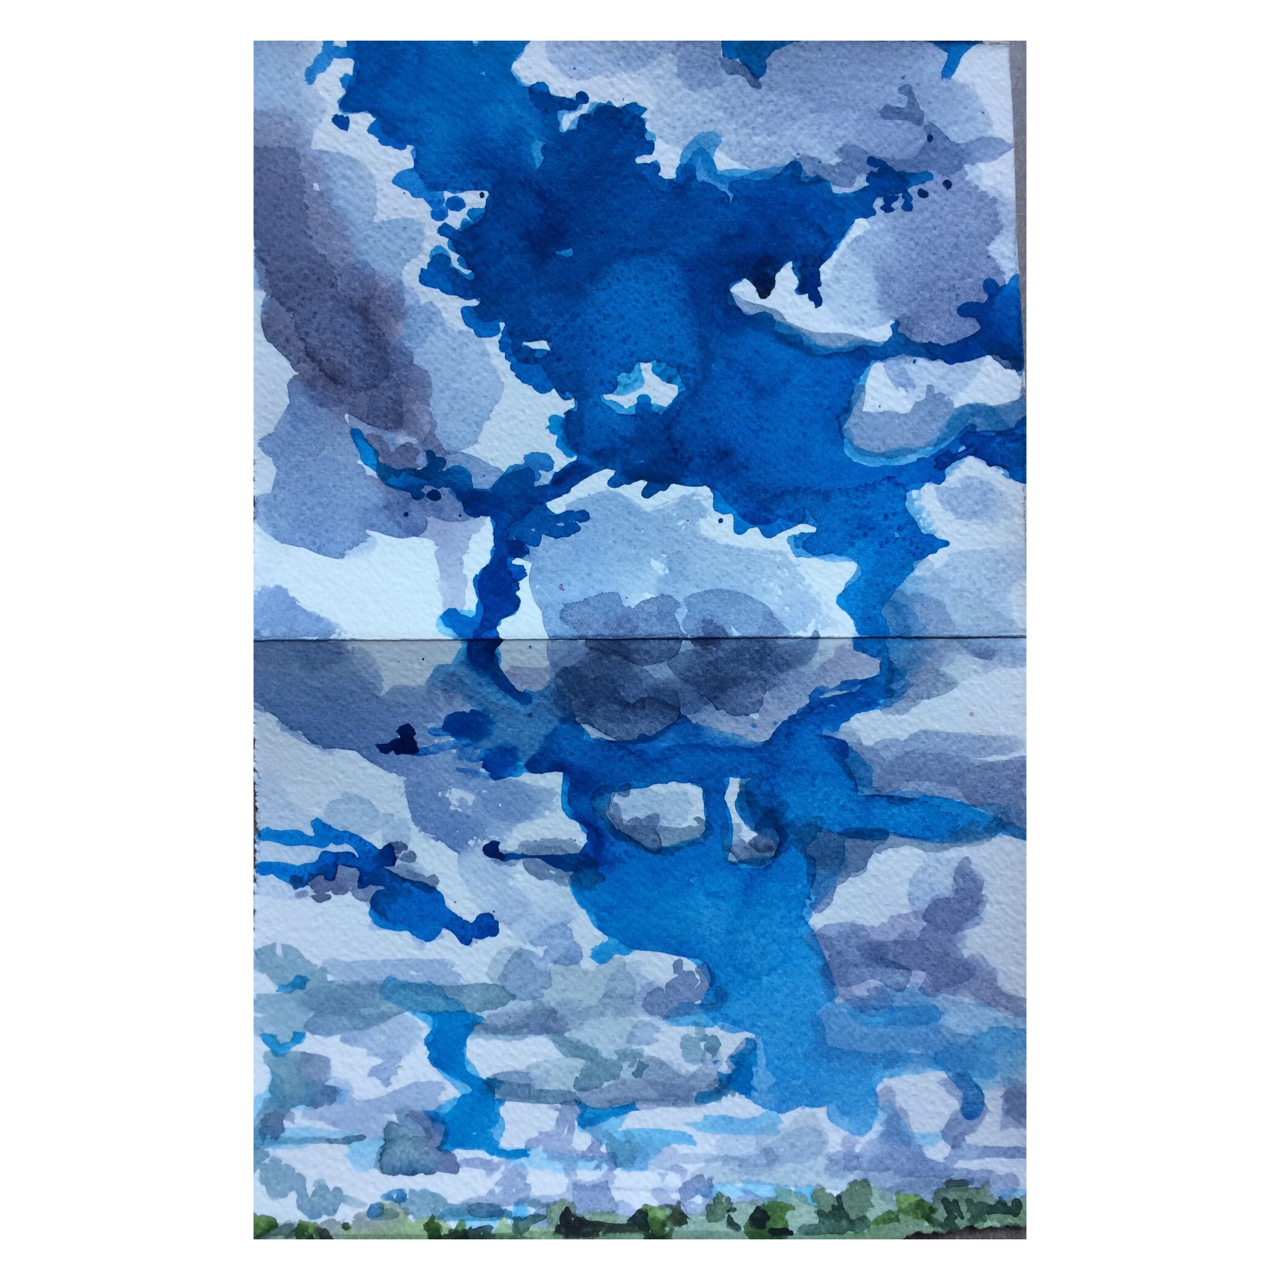 Céu no lago Paranoá – aquarela